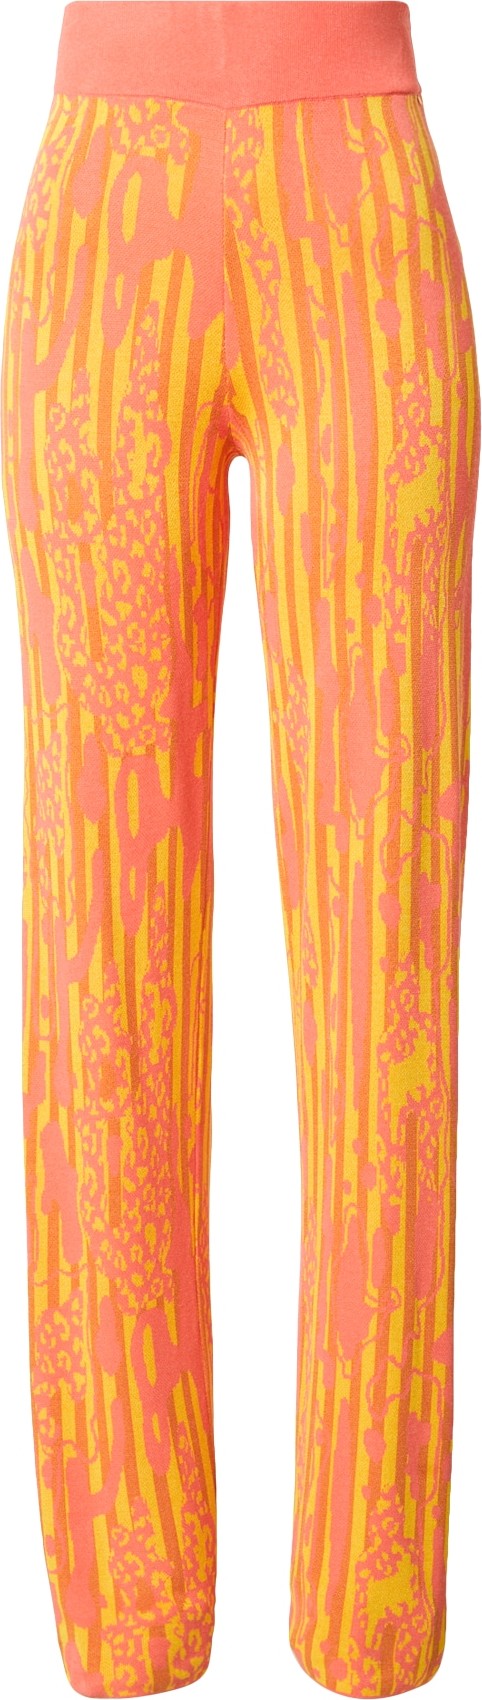 DELICATELOVE Kalhoty 'LULA WOOD' korálová / limone / tmavě oranžová